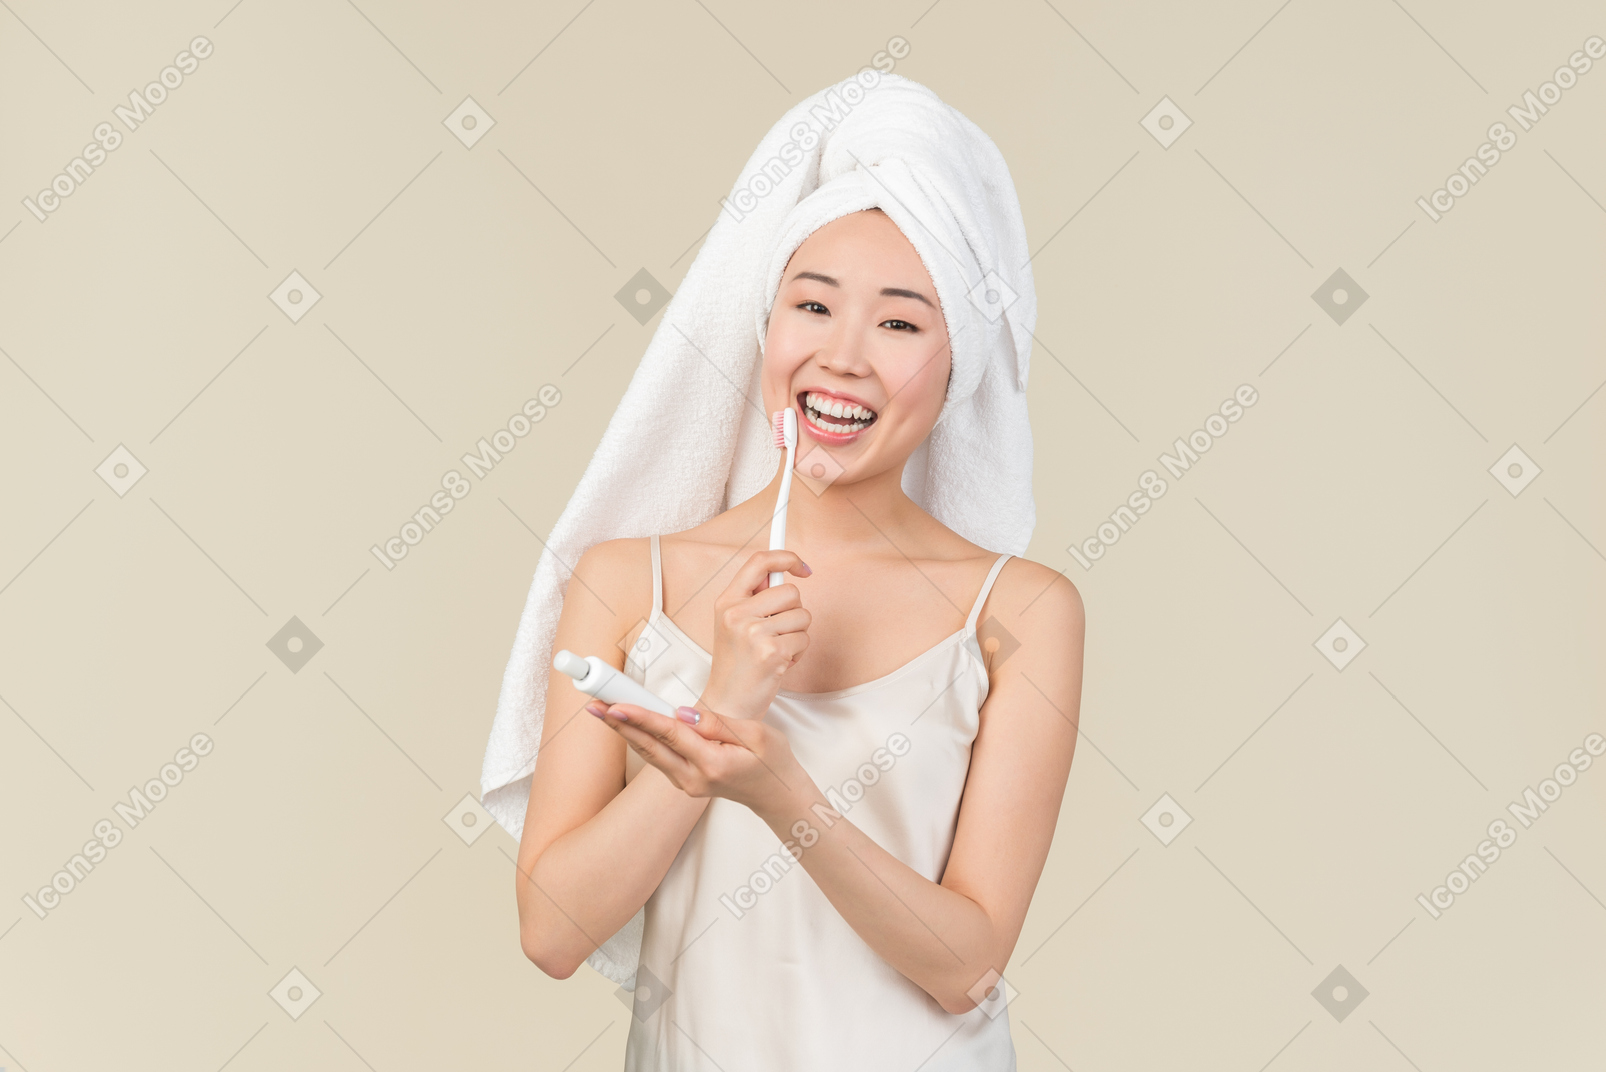 Sonriente joven asiática con el pelo envuelto en una toalla, cepillarse los dientes